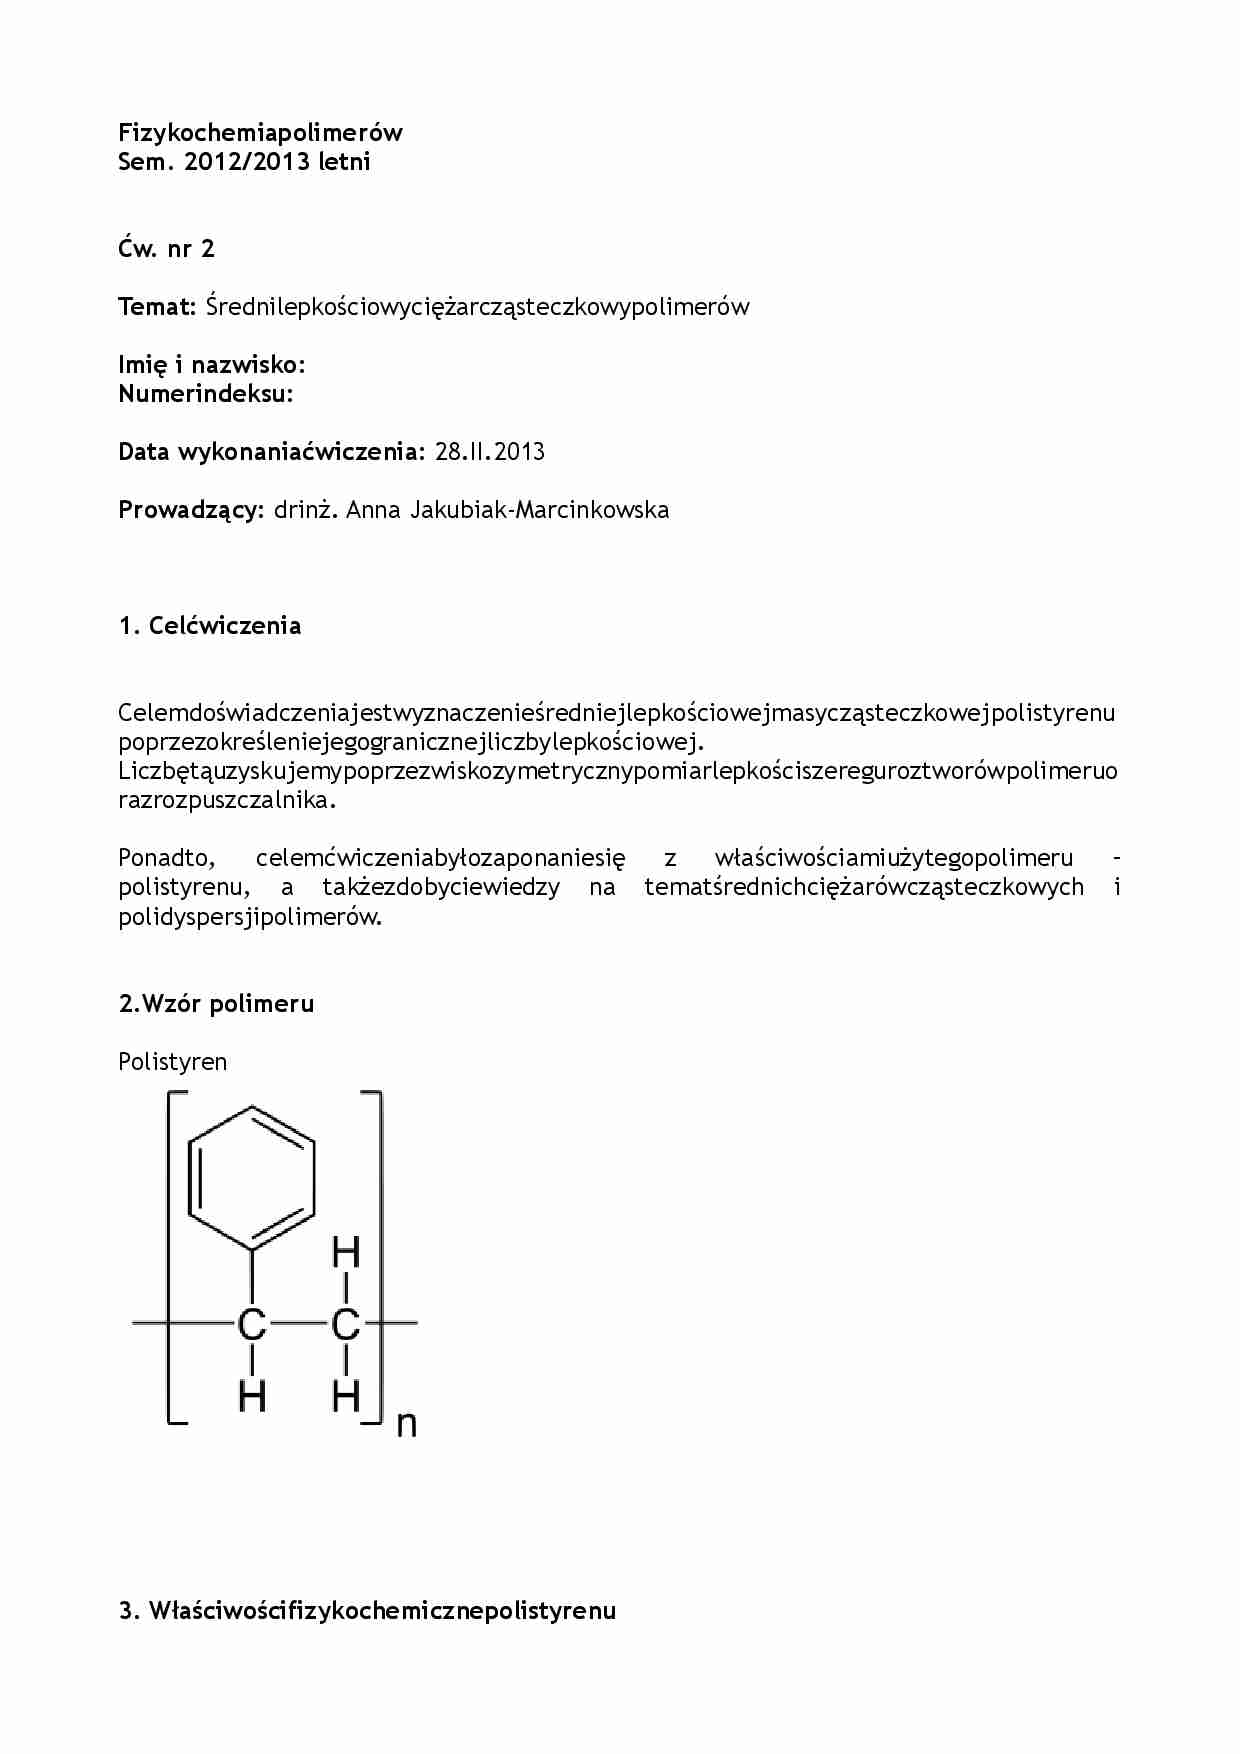 Średni lepkościowy ciężar cząsteczkowy polimerów - omówienie  - strona 1